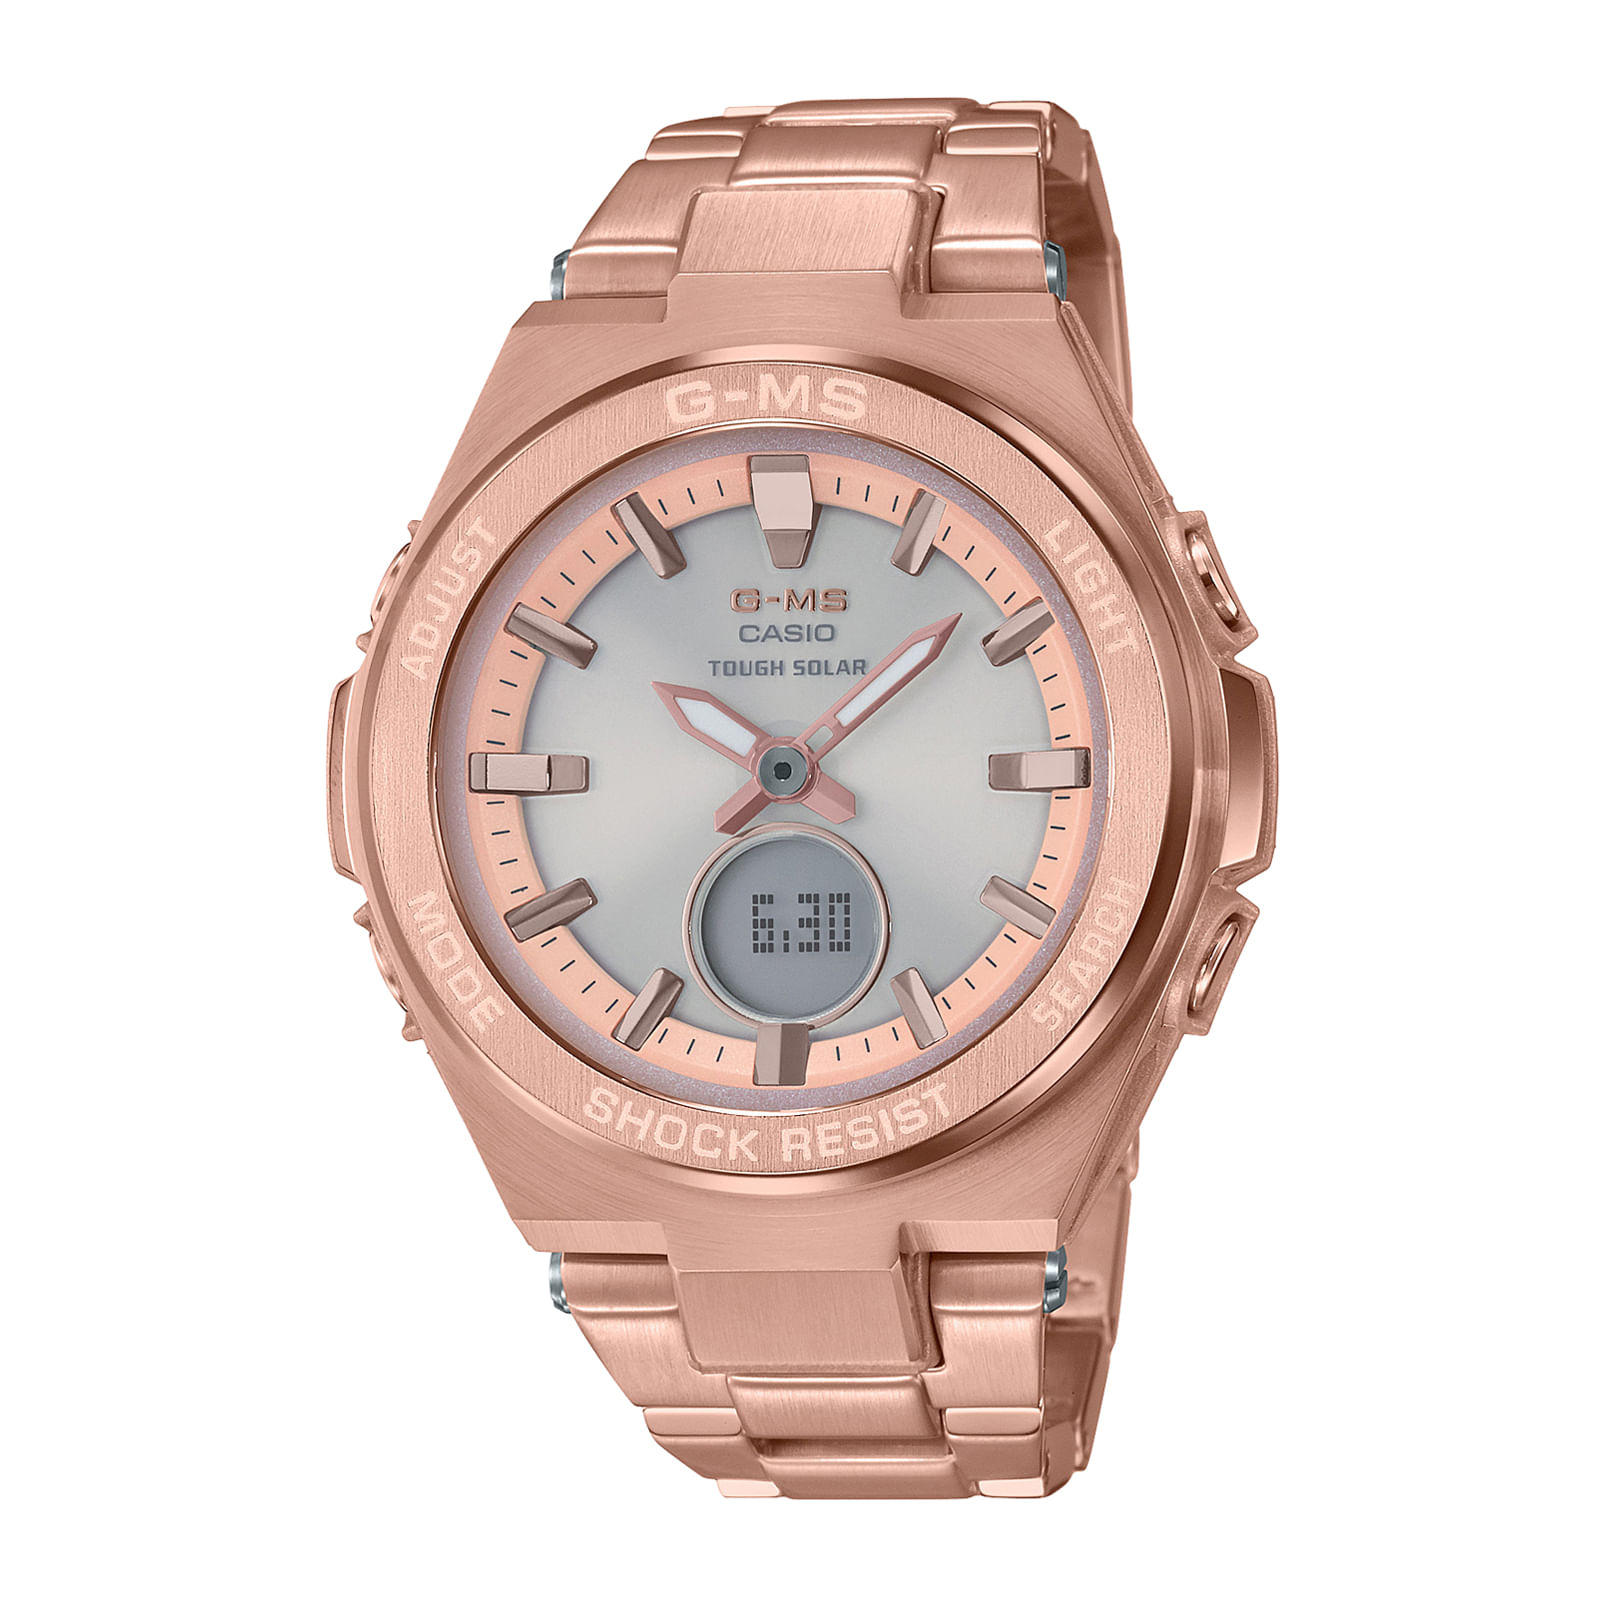 Reloj BABY-G MSG-S200DG-4A Acero Mujer Oro Rosa